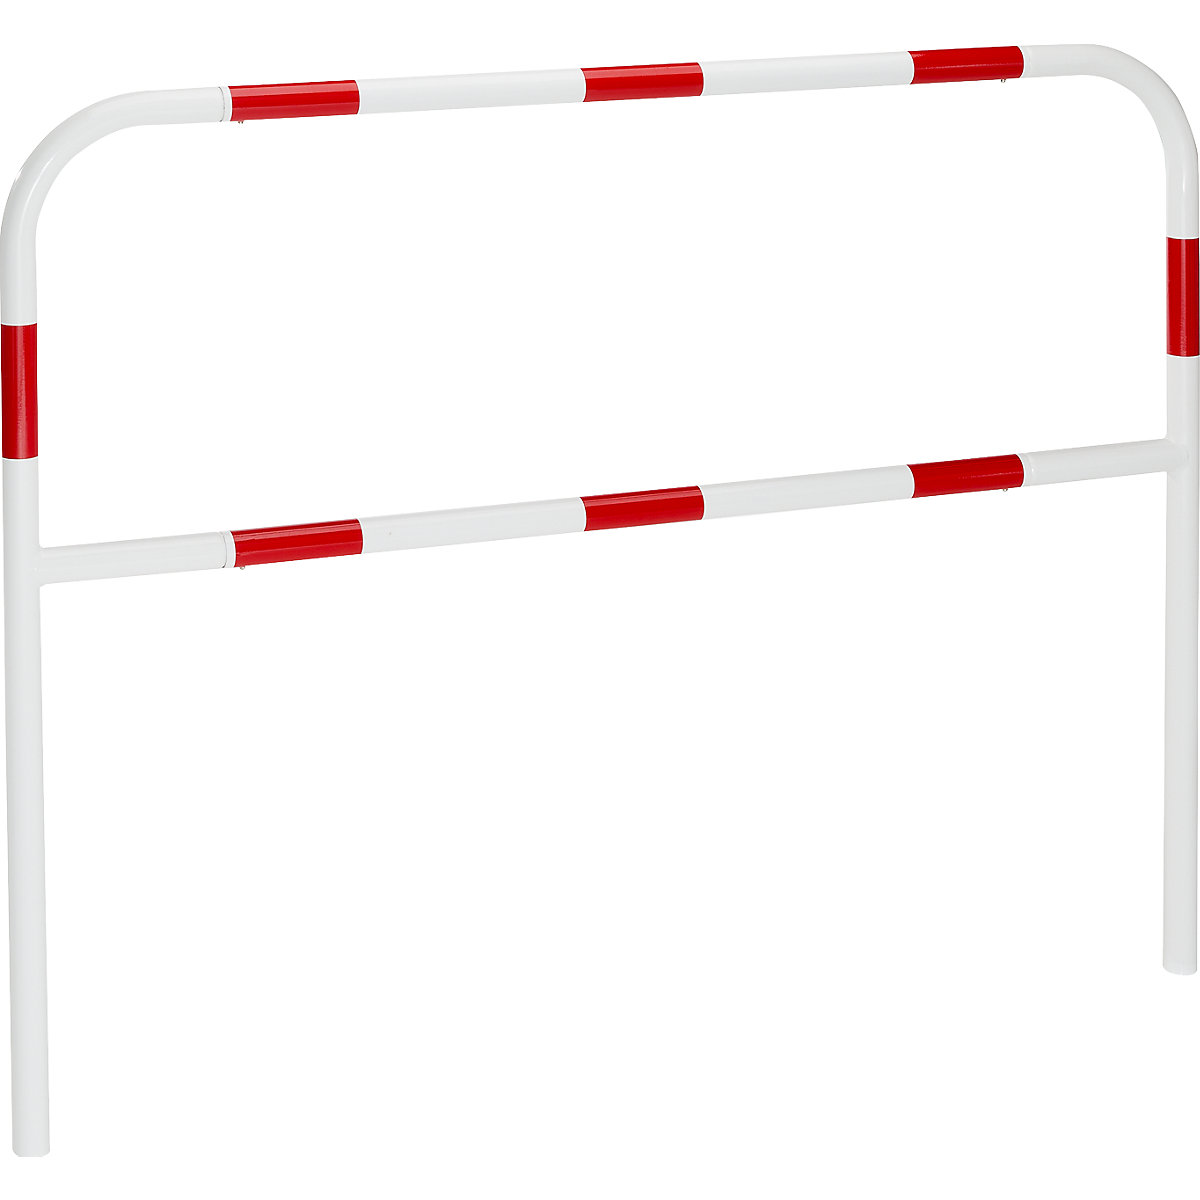 Sicherheitsbügel für Gefahrenzonen, zum Einbetonieren, rot / weiß, Breite 1500 mm